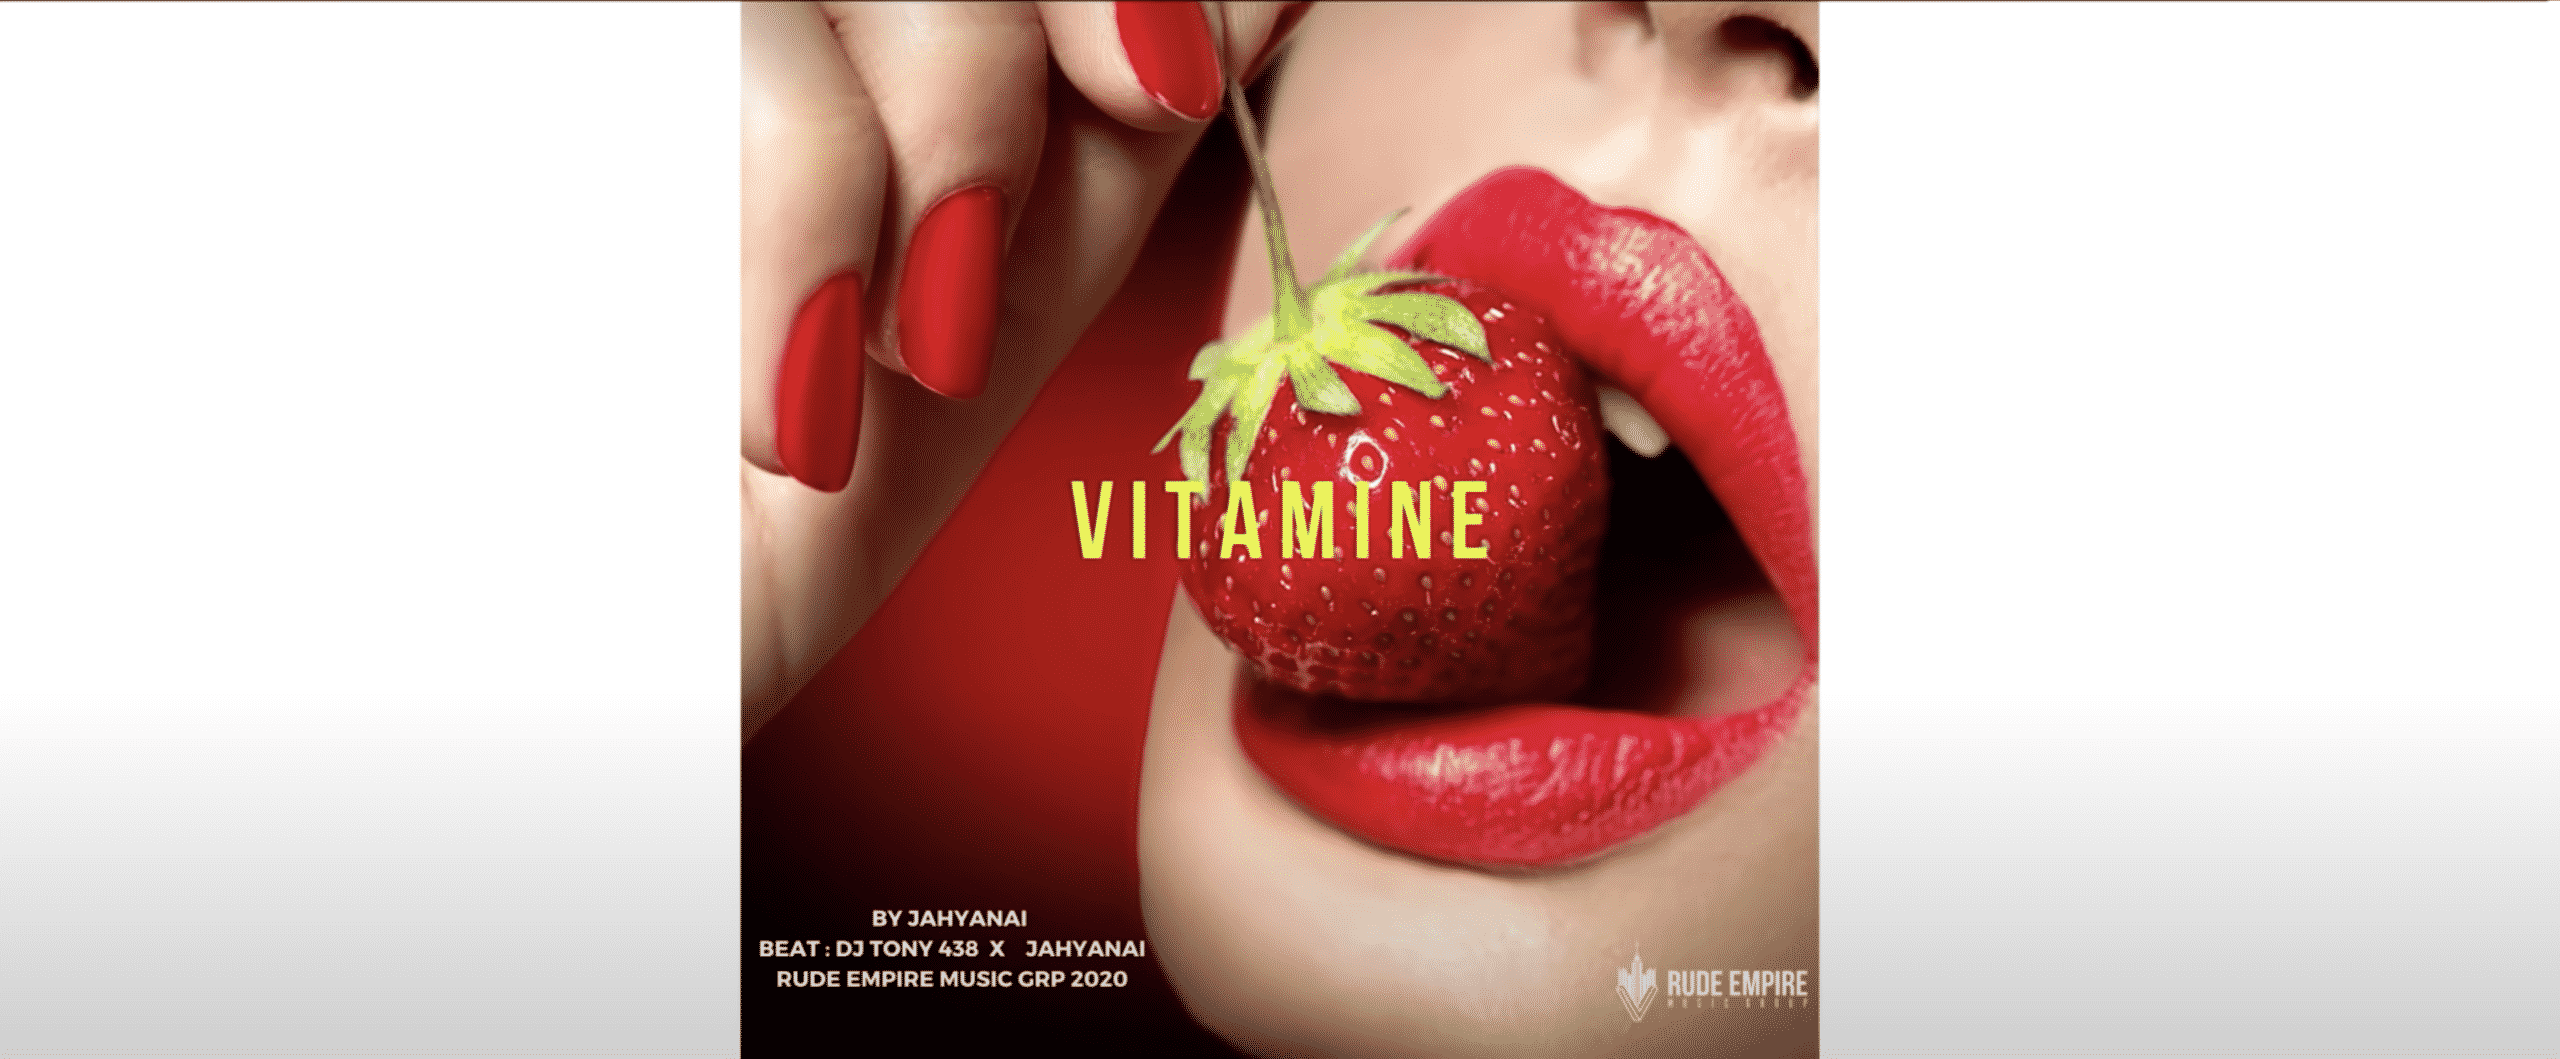 KISAILE #12 : DJTony438, Le Réunionnais à la production du titre Vitamine de Jahyanai !